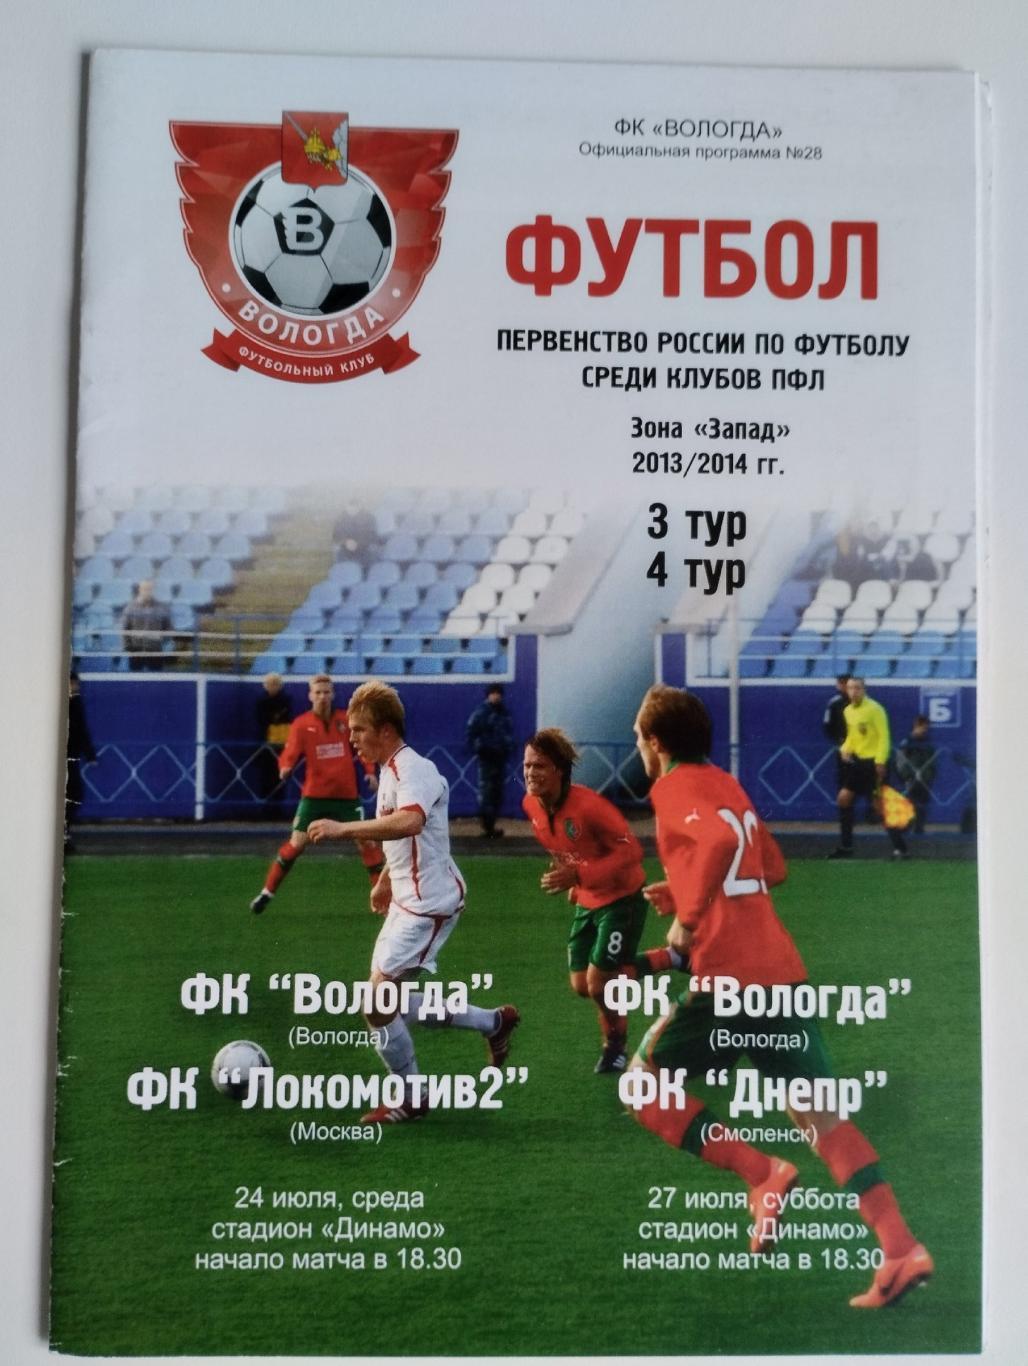 Вологда - Локомотив-2 Москва + Днепр Смоленск — 24-27.07.2013